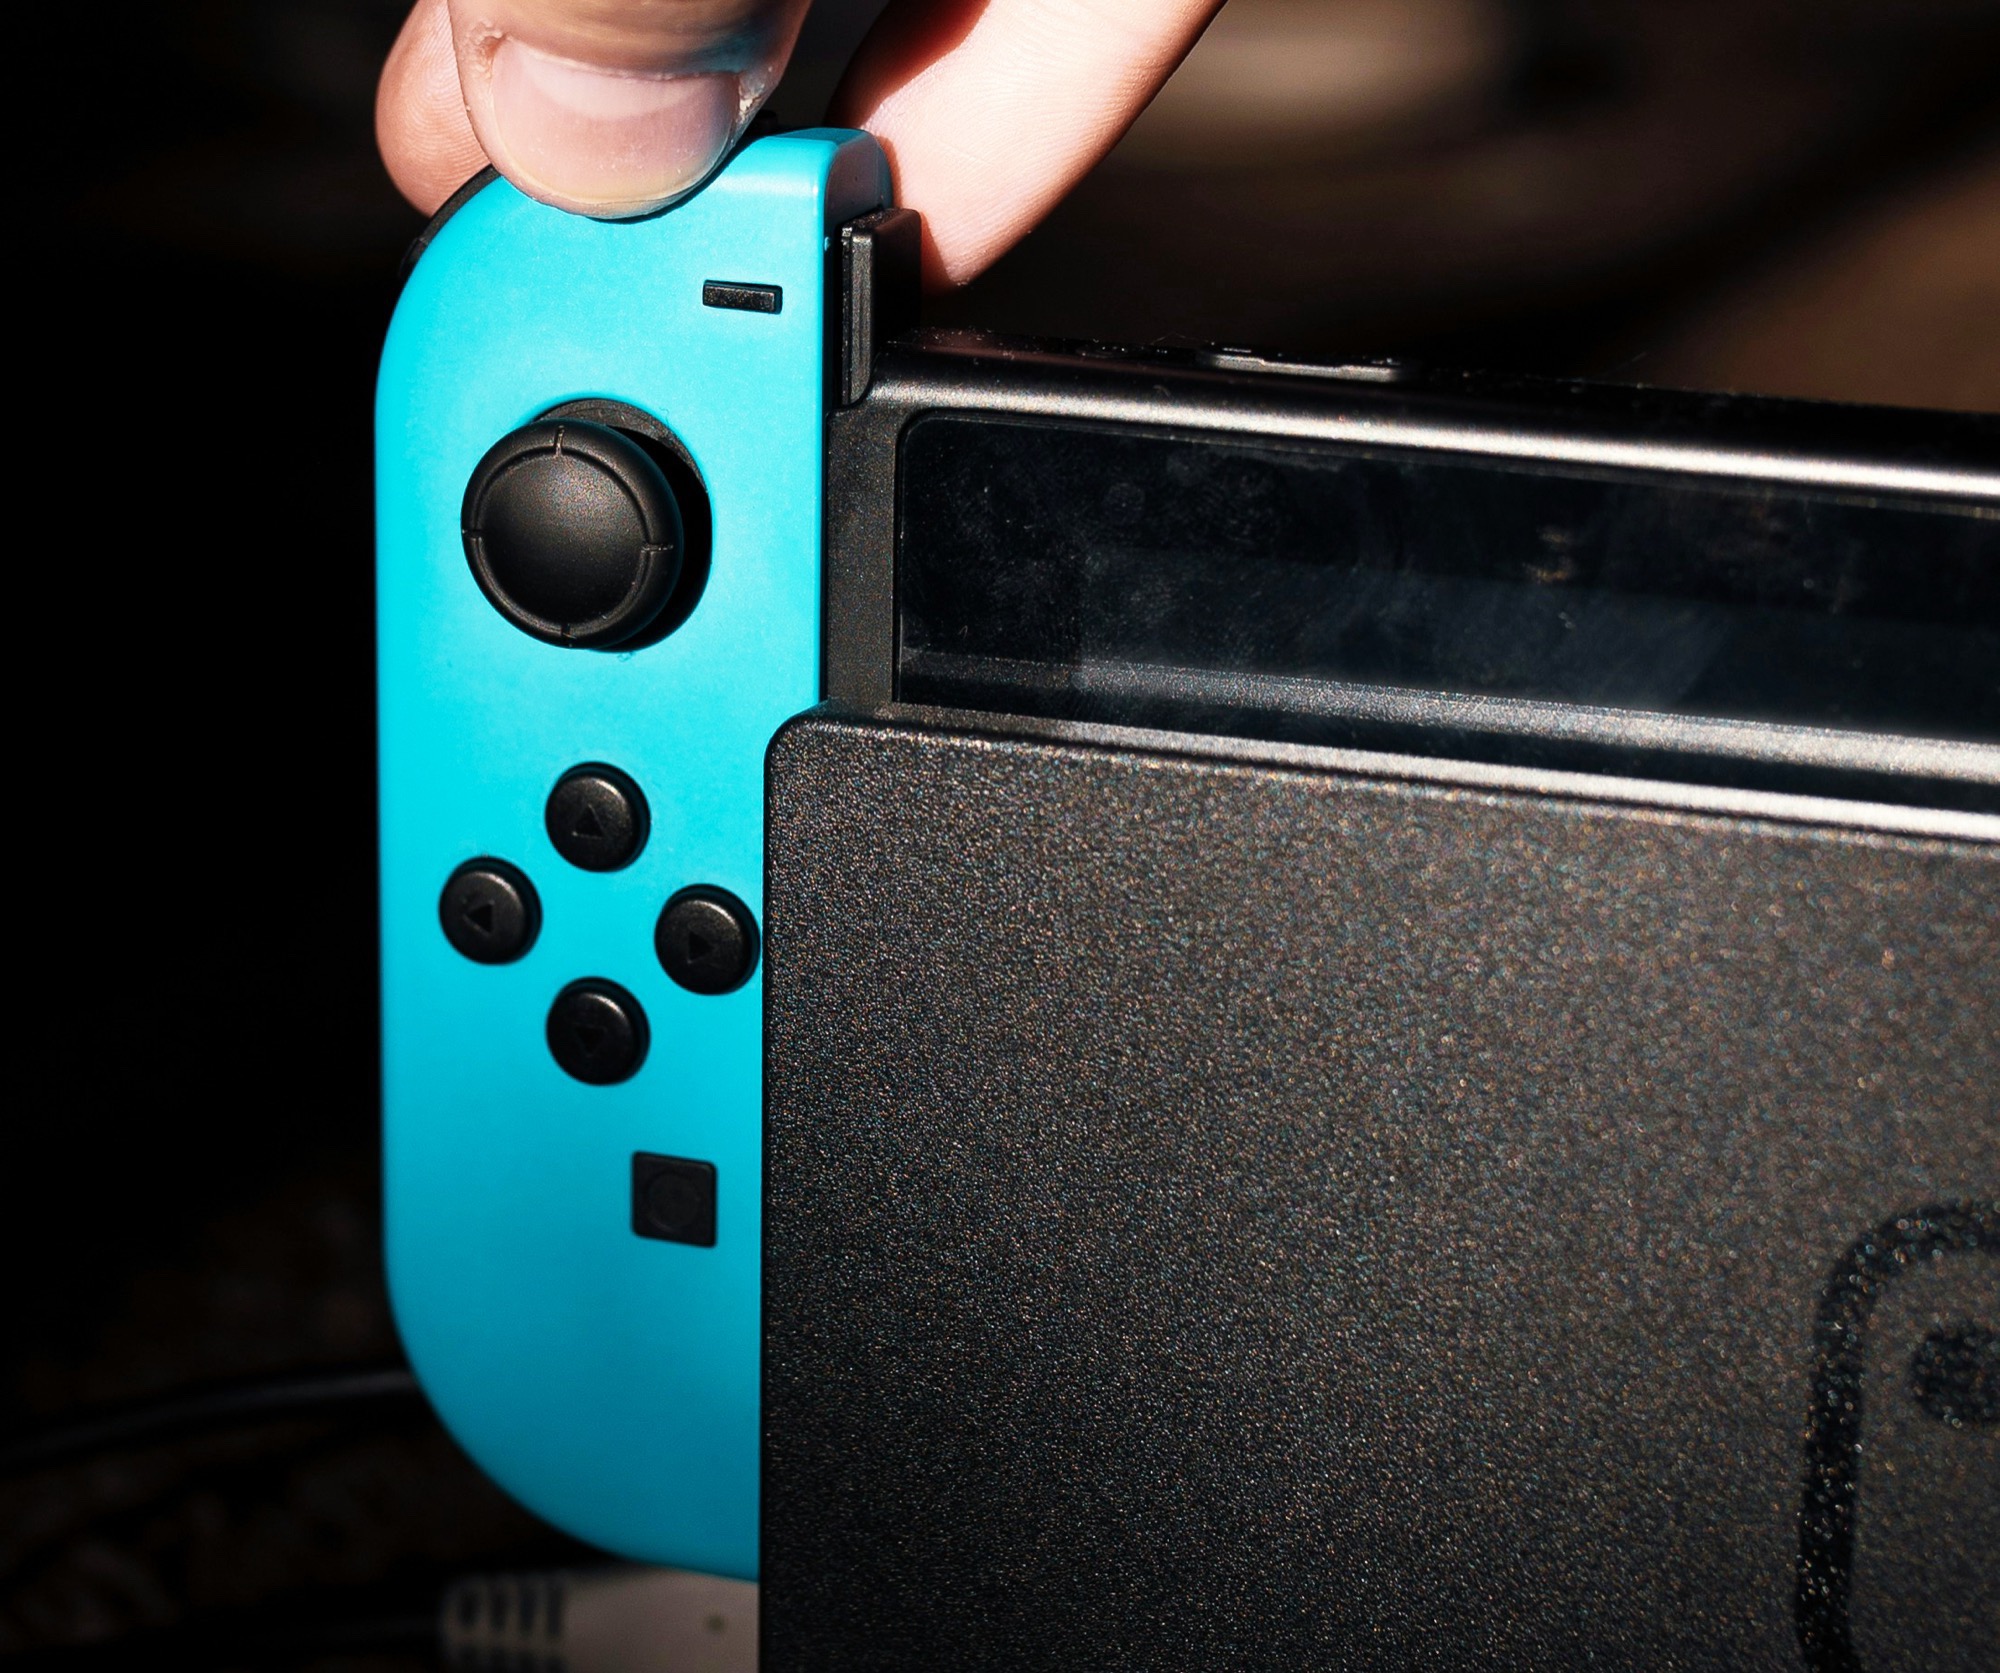 Nintendo Switch 2: los rumores recientes apuntan a un lanzamiento inminente